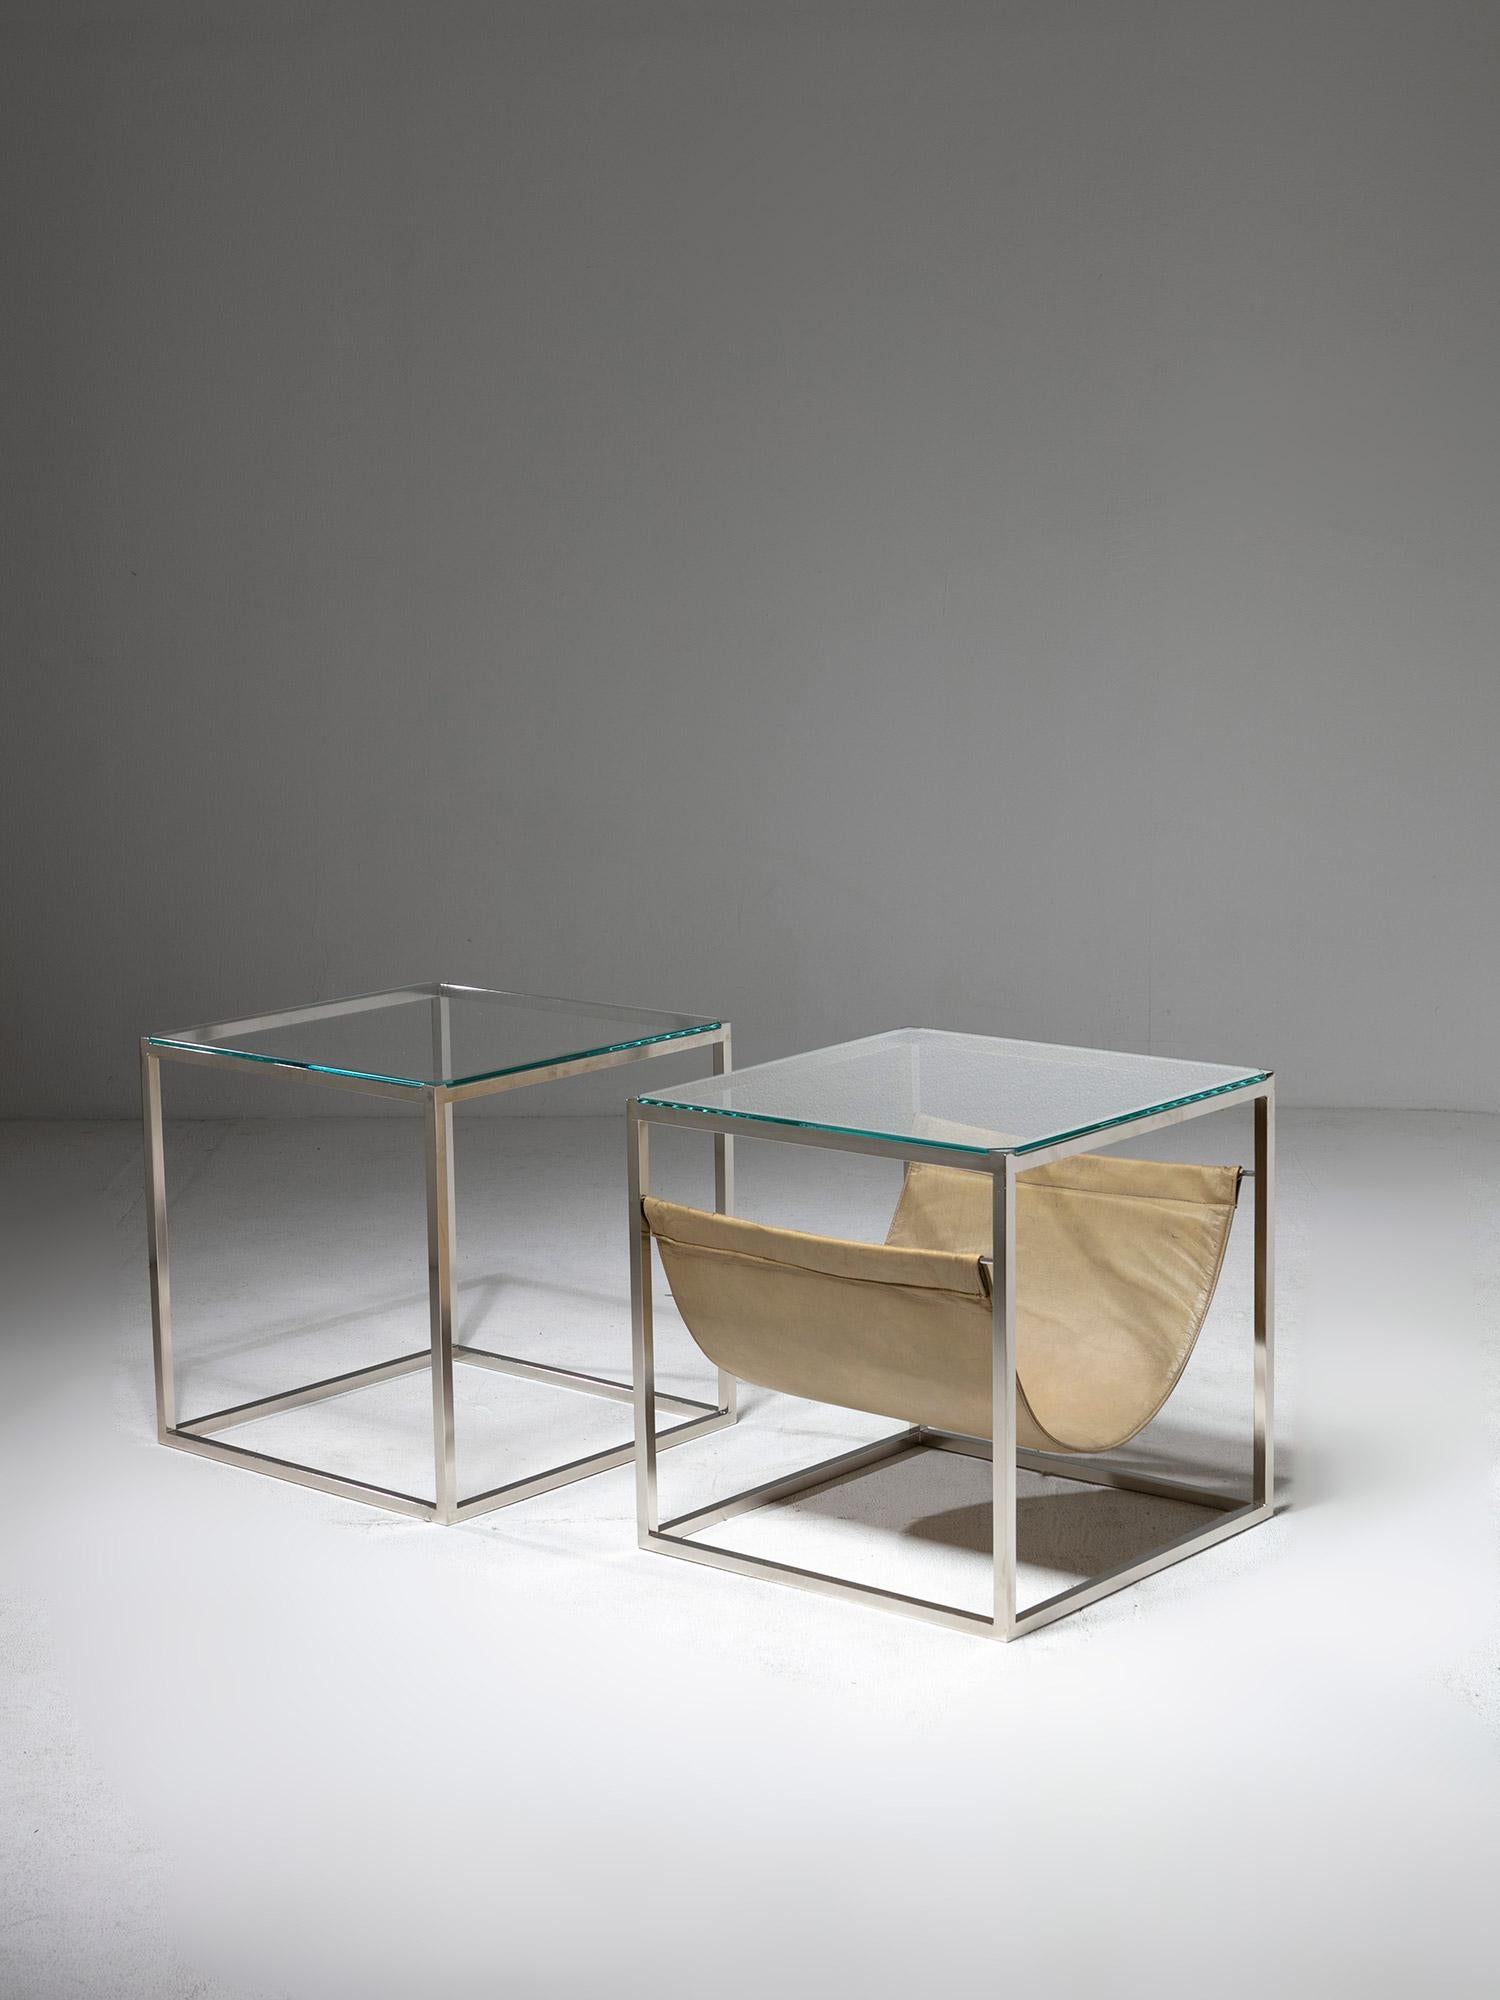 Ensemble de deux tables d'appoint par Lino Sabattini pour Sabattini Argenteria.
Cadre en métal quadrillé et plateau en verre à bords coupés. 
L'une des pièces comporte une pochette en cuir.